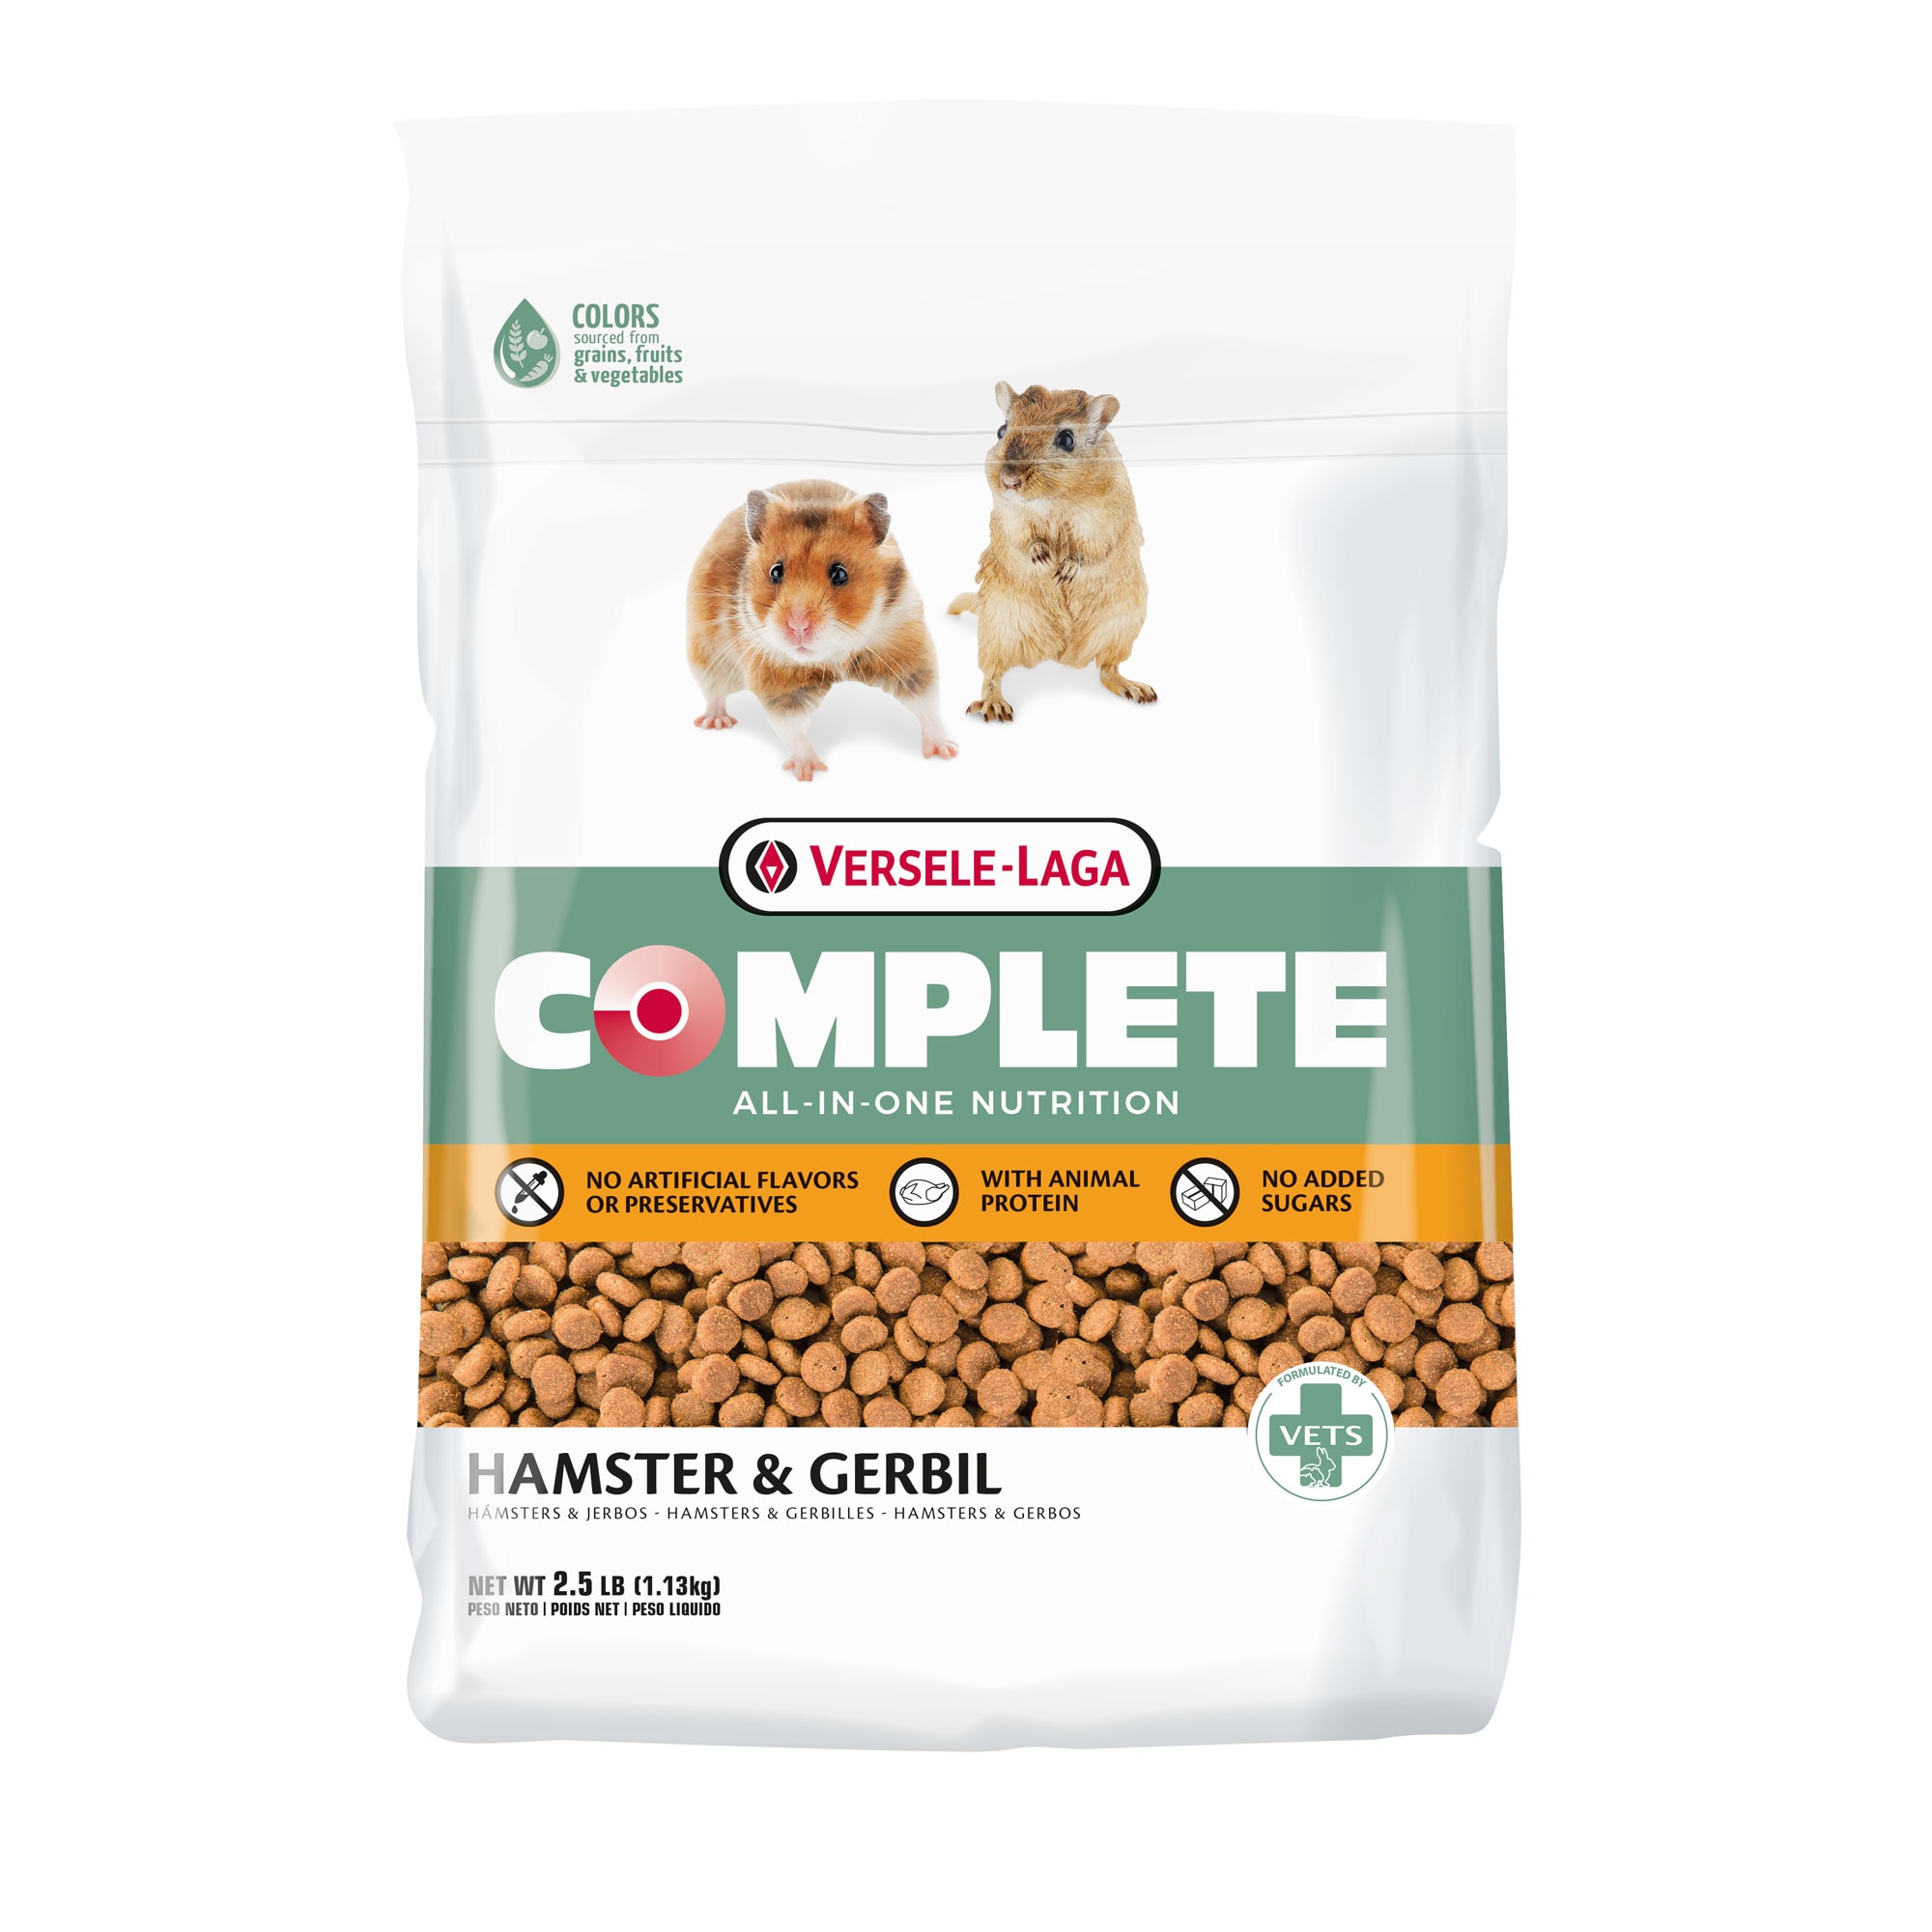 hulp ernstig bagage Versele-Laga Complete All-In-One Hamster and Gerbil Food, 2.5 lbs. | Petco